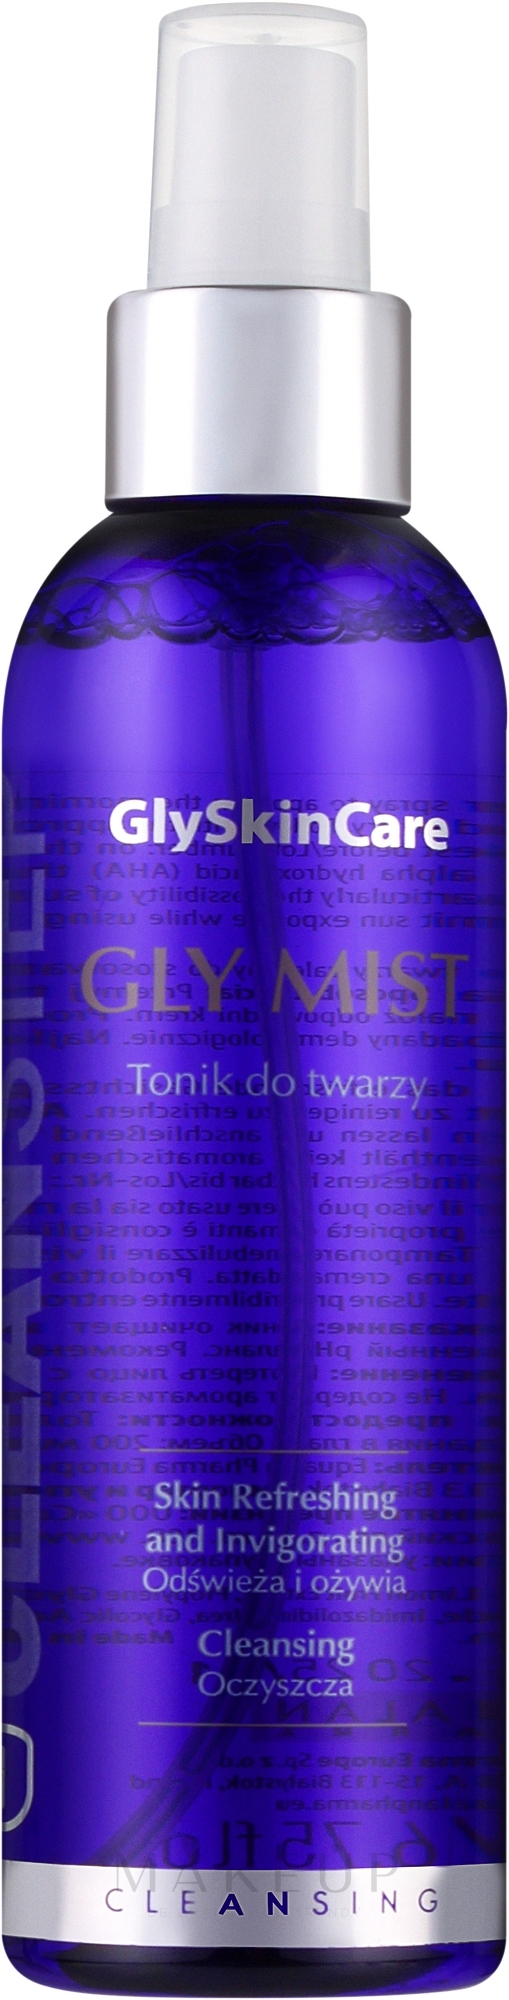 Erfrischendes Gesichtsreinigungstonikum - GlySkinCare Gly Mist — Foto 200 ml